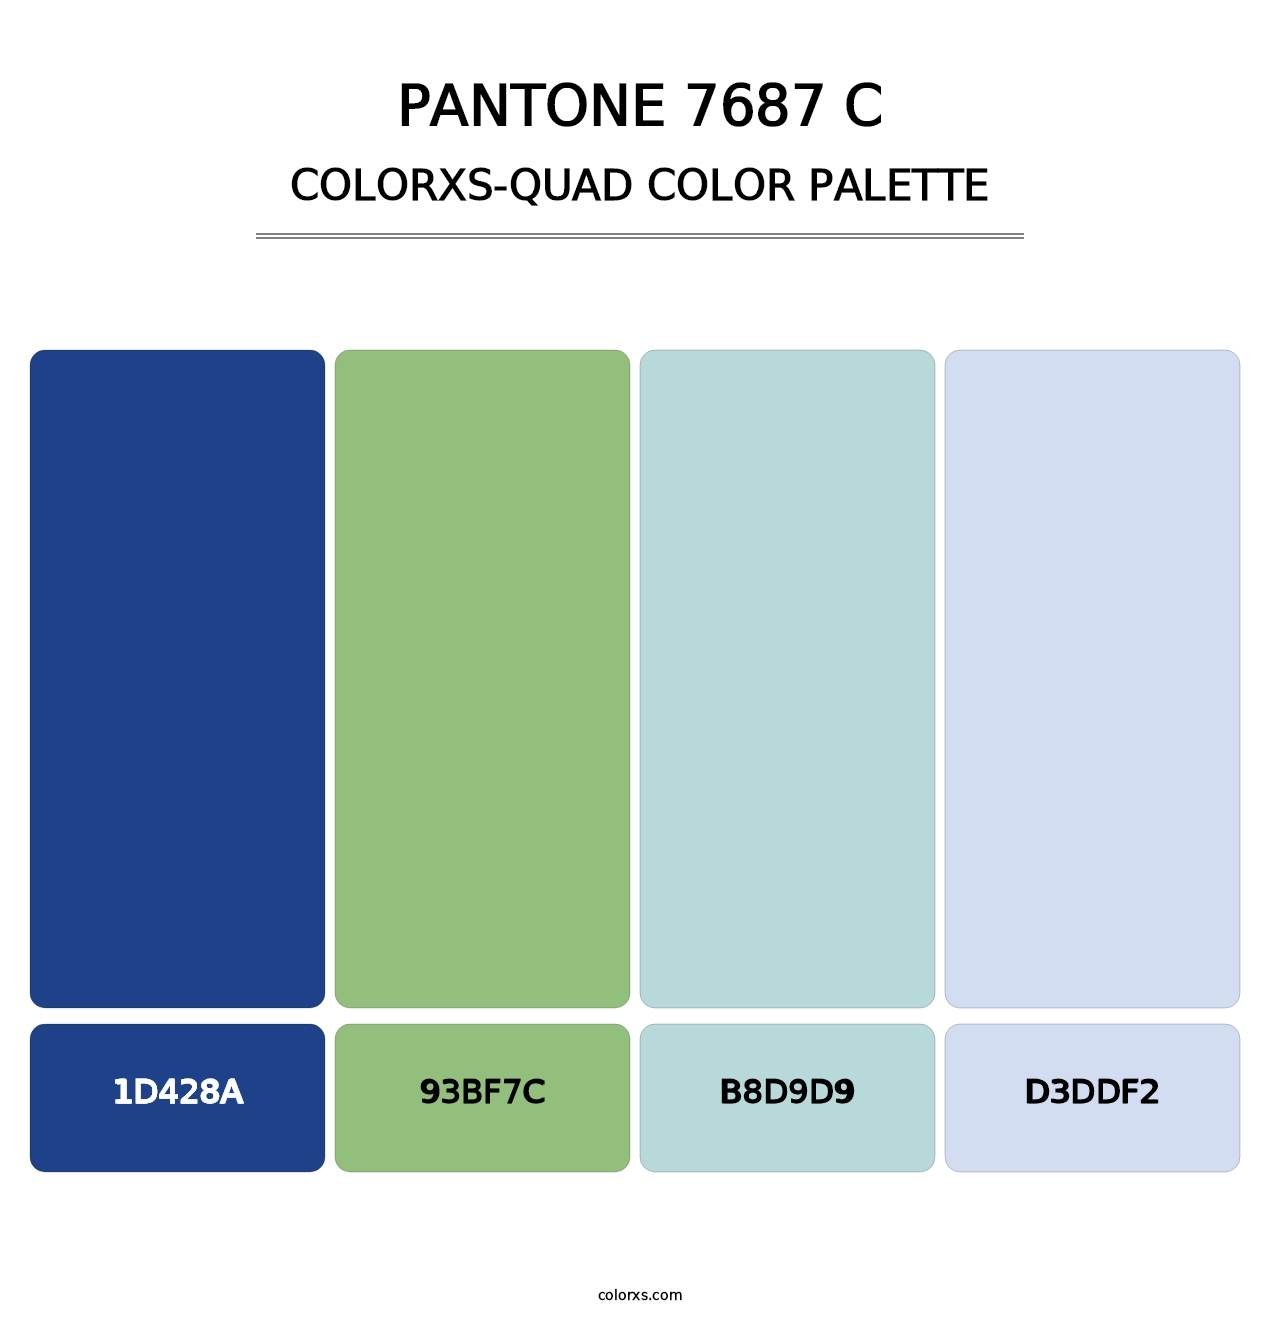 PANTONE 7687 C - Colorxs Quad Palette